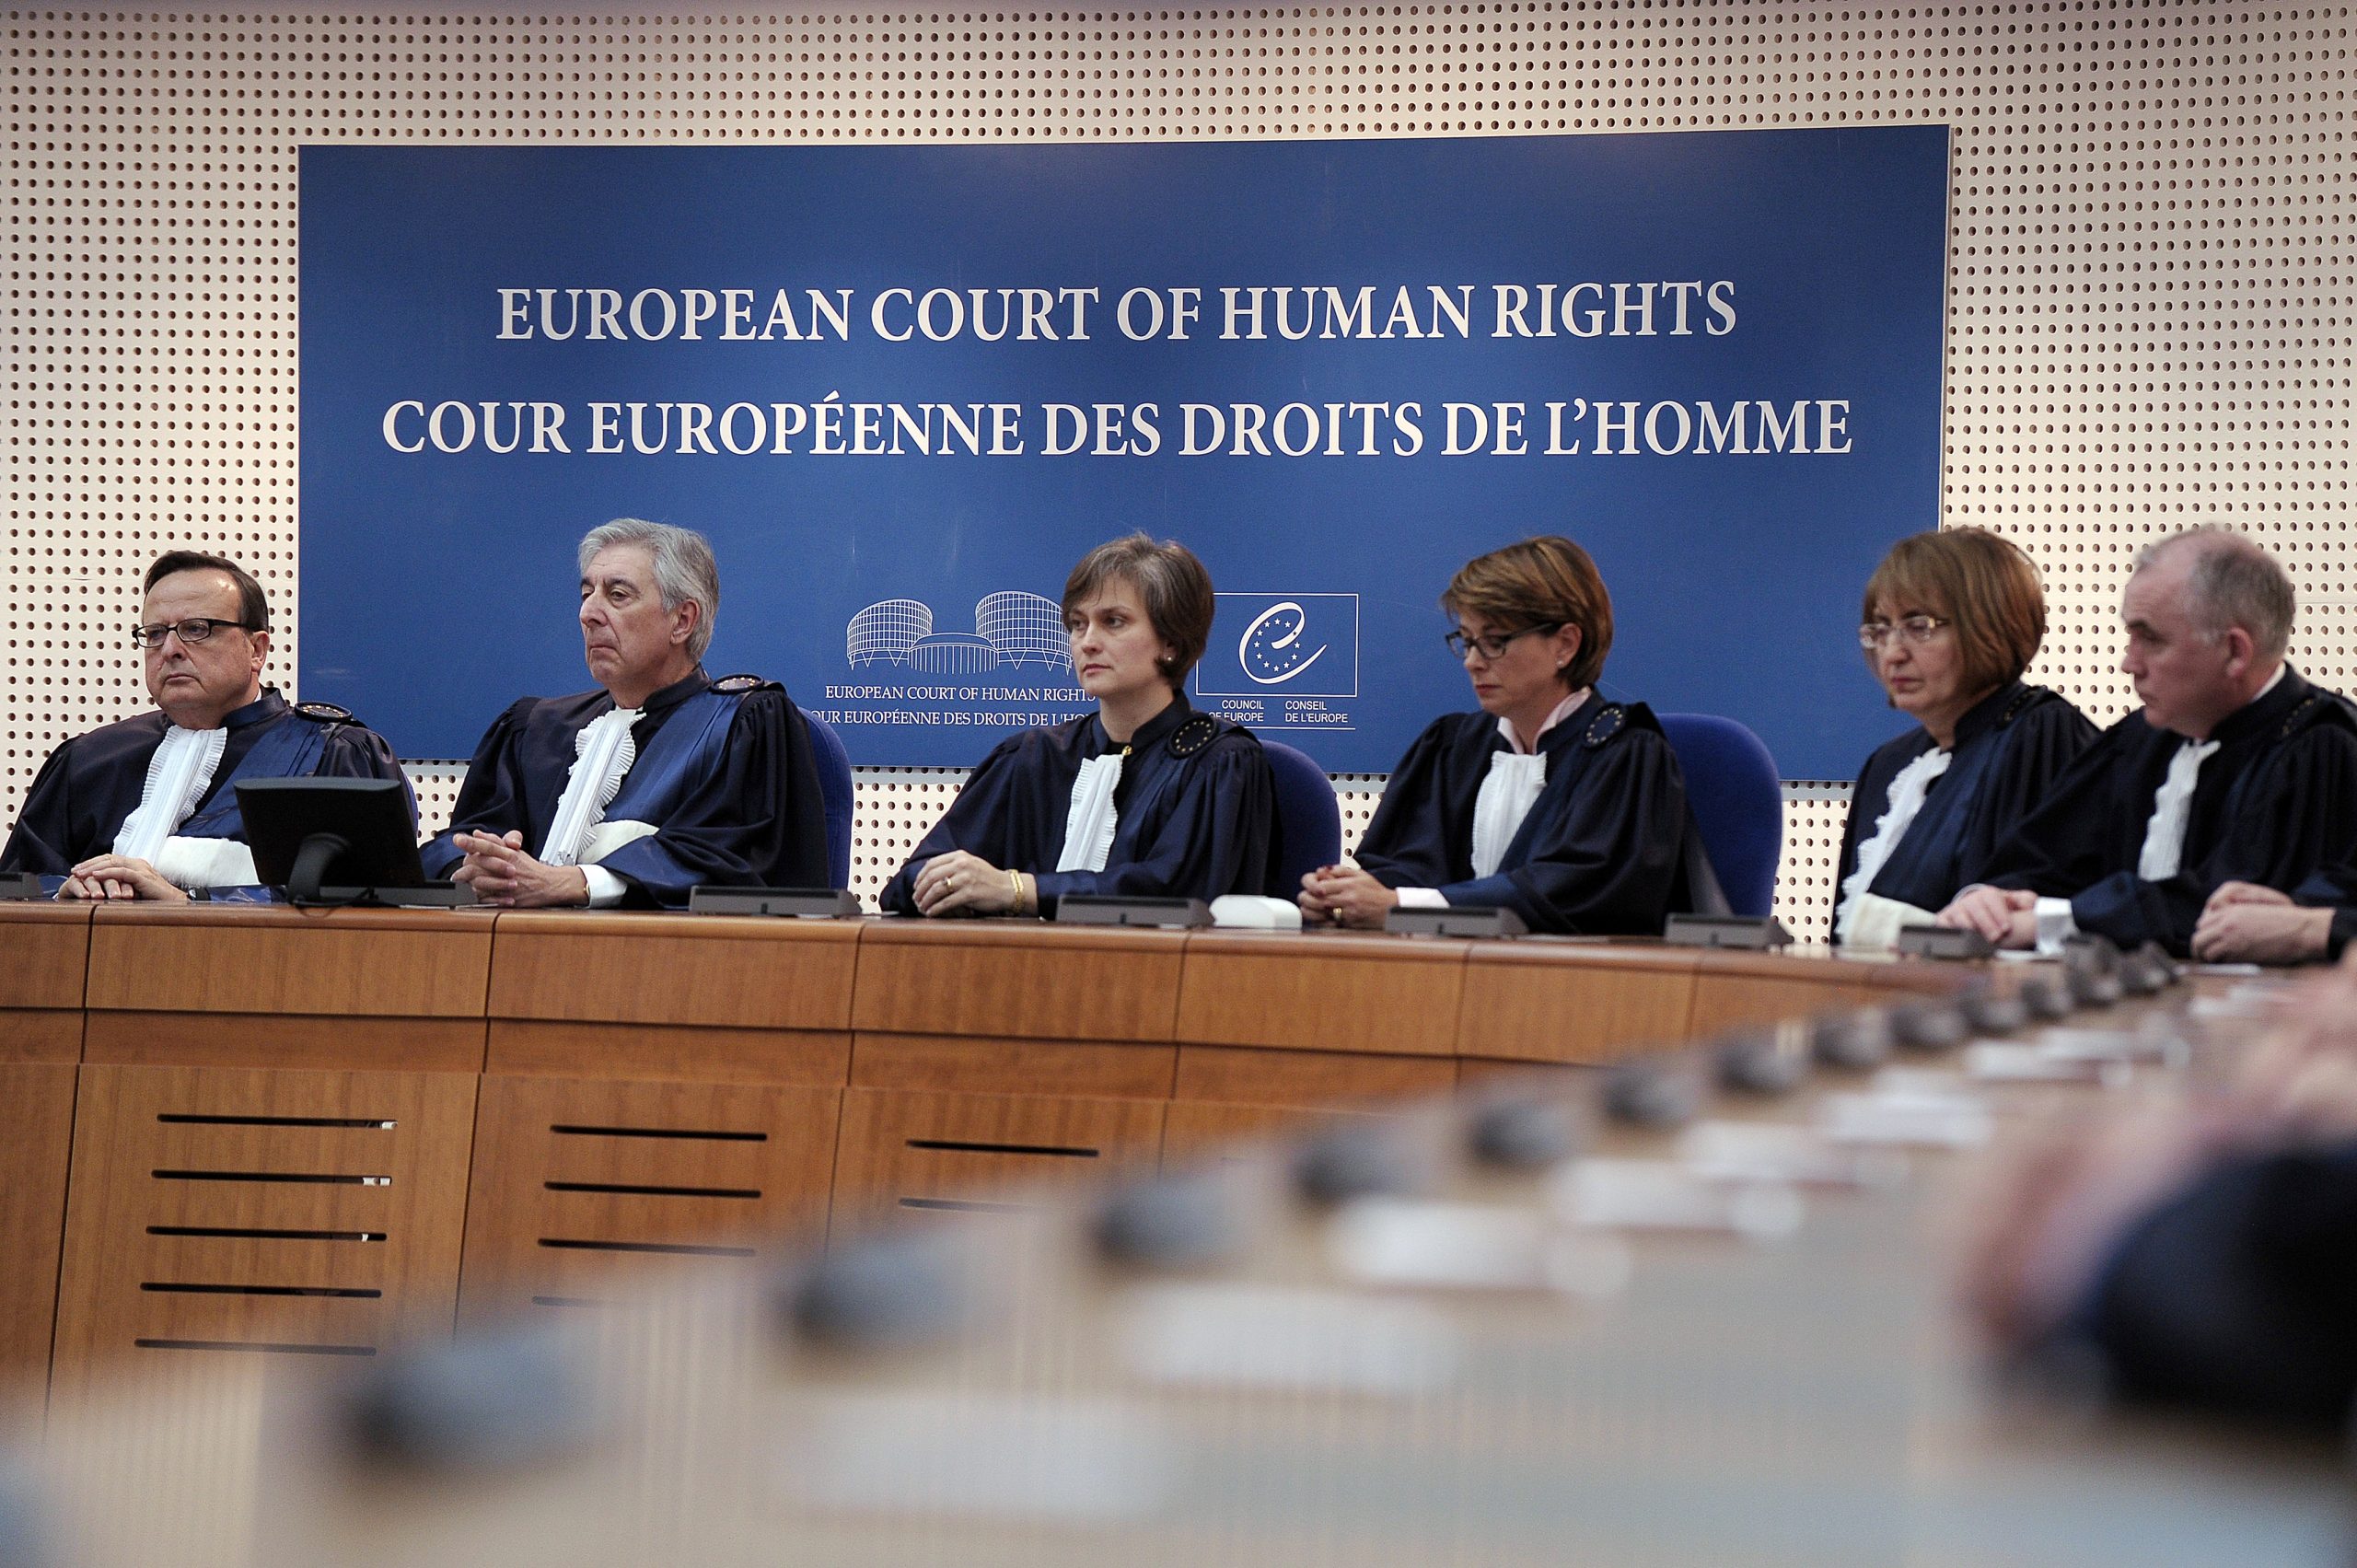 Европейский суд россия. Совет Европы и Европейский суд по правам человека. Заседание европейского суда по правам человека. Европейский суд по правам человека в Страсбурге. Европейская комиссия по правам человека.